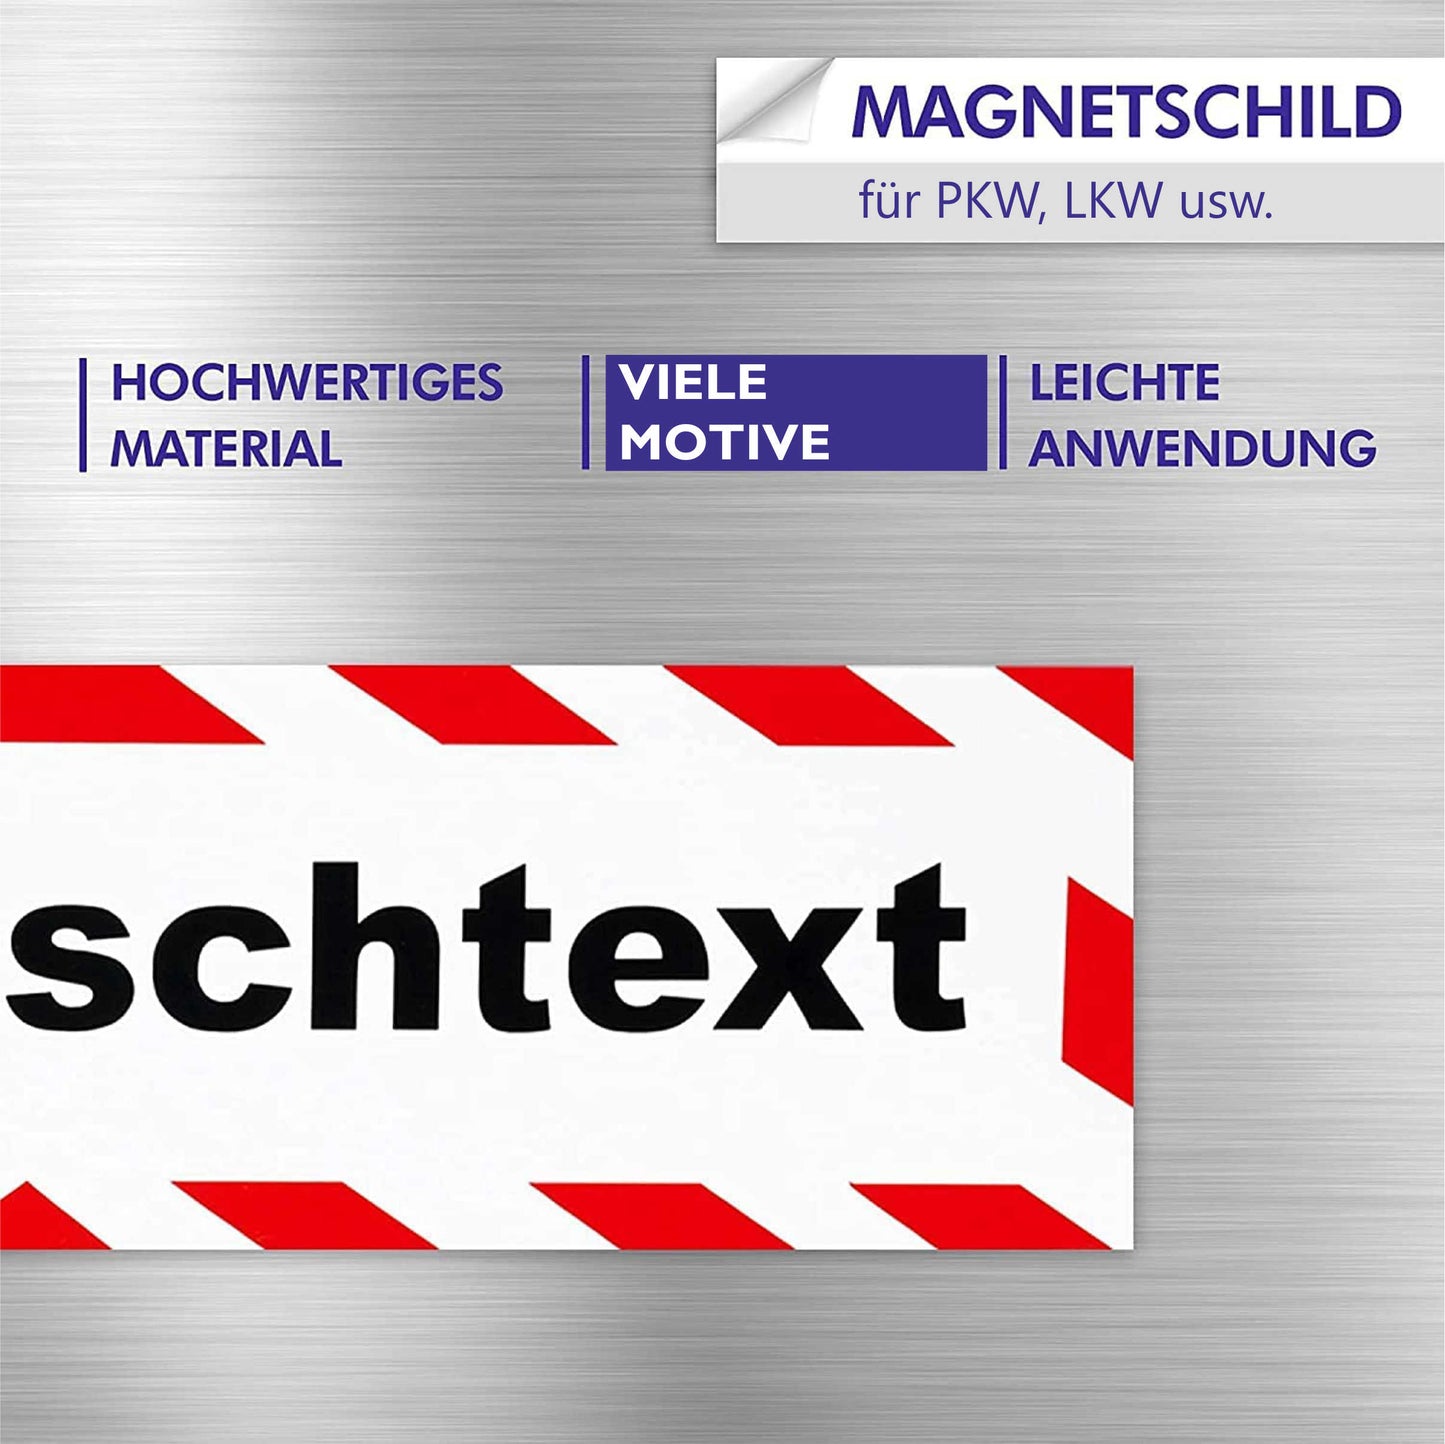 Magnetschild - Wasserwacht - Magnetfolie für Auto - LKW - Truck - Baustelle - Firma